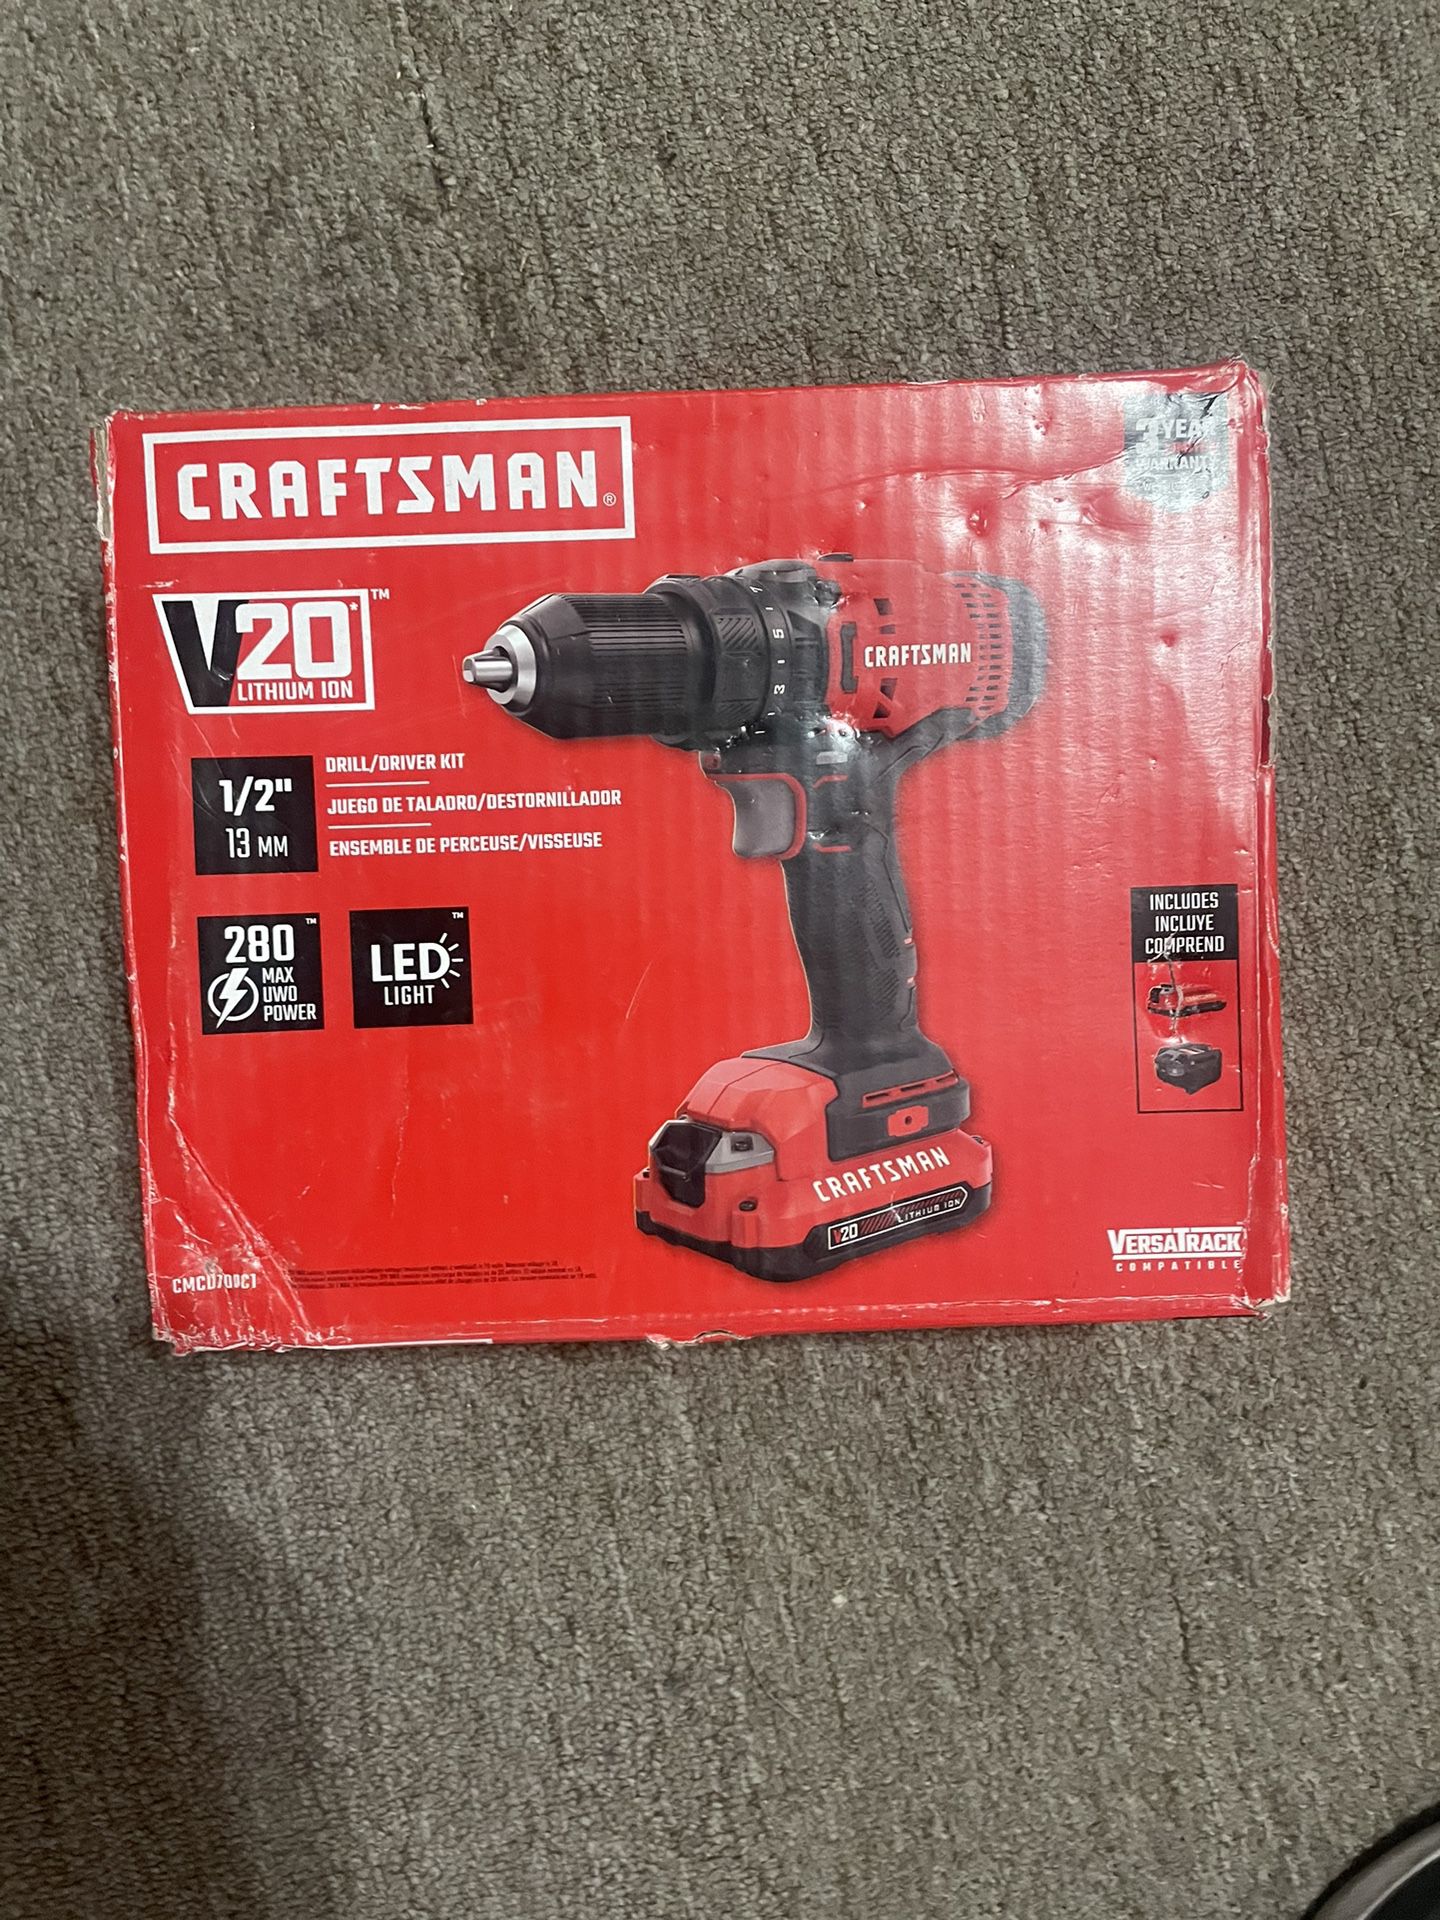 Craftsman 20v Drill